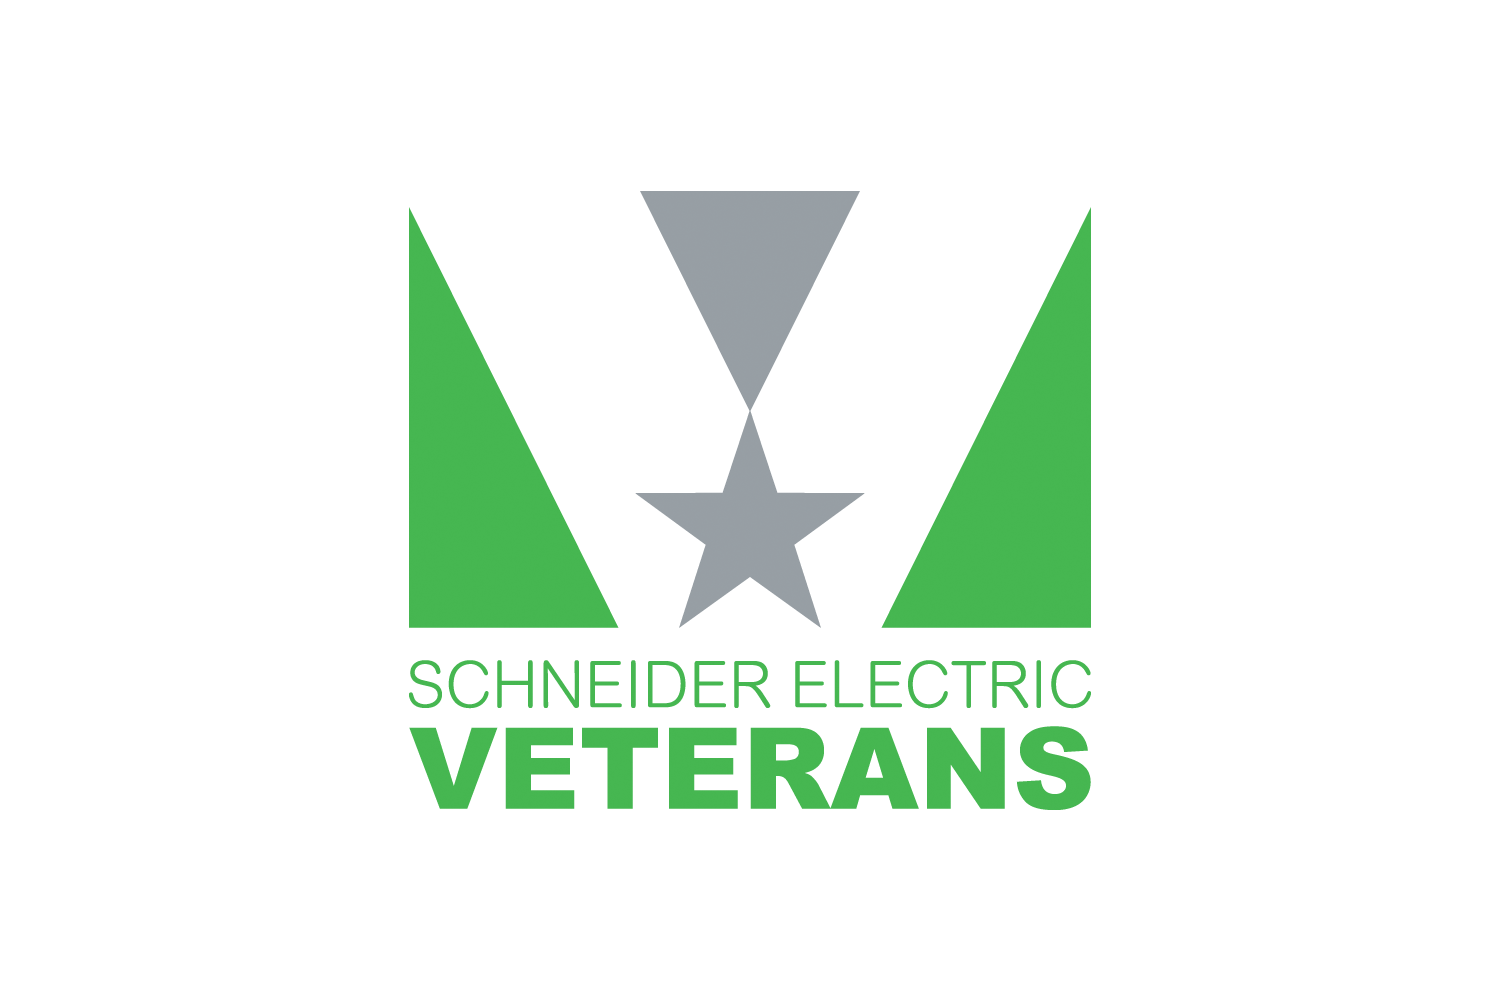 Schneider Electric Veterans Logo